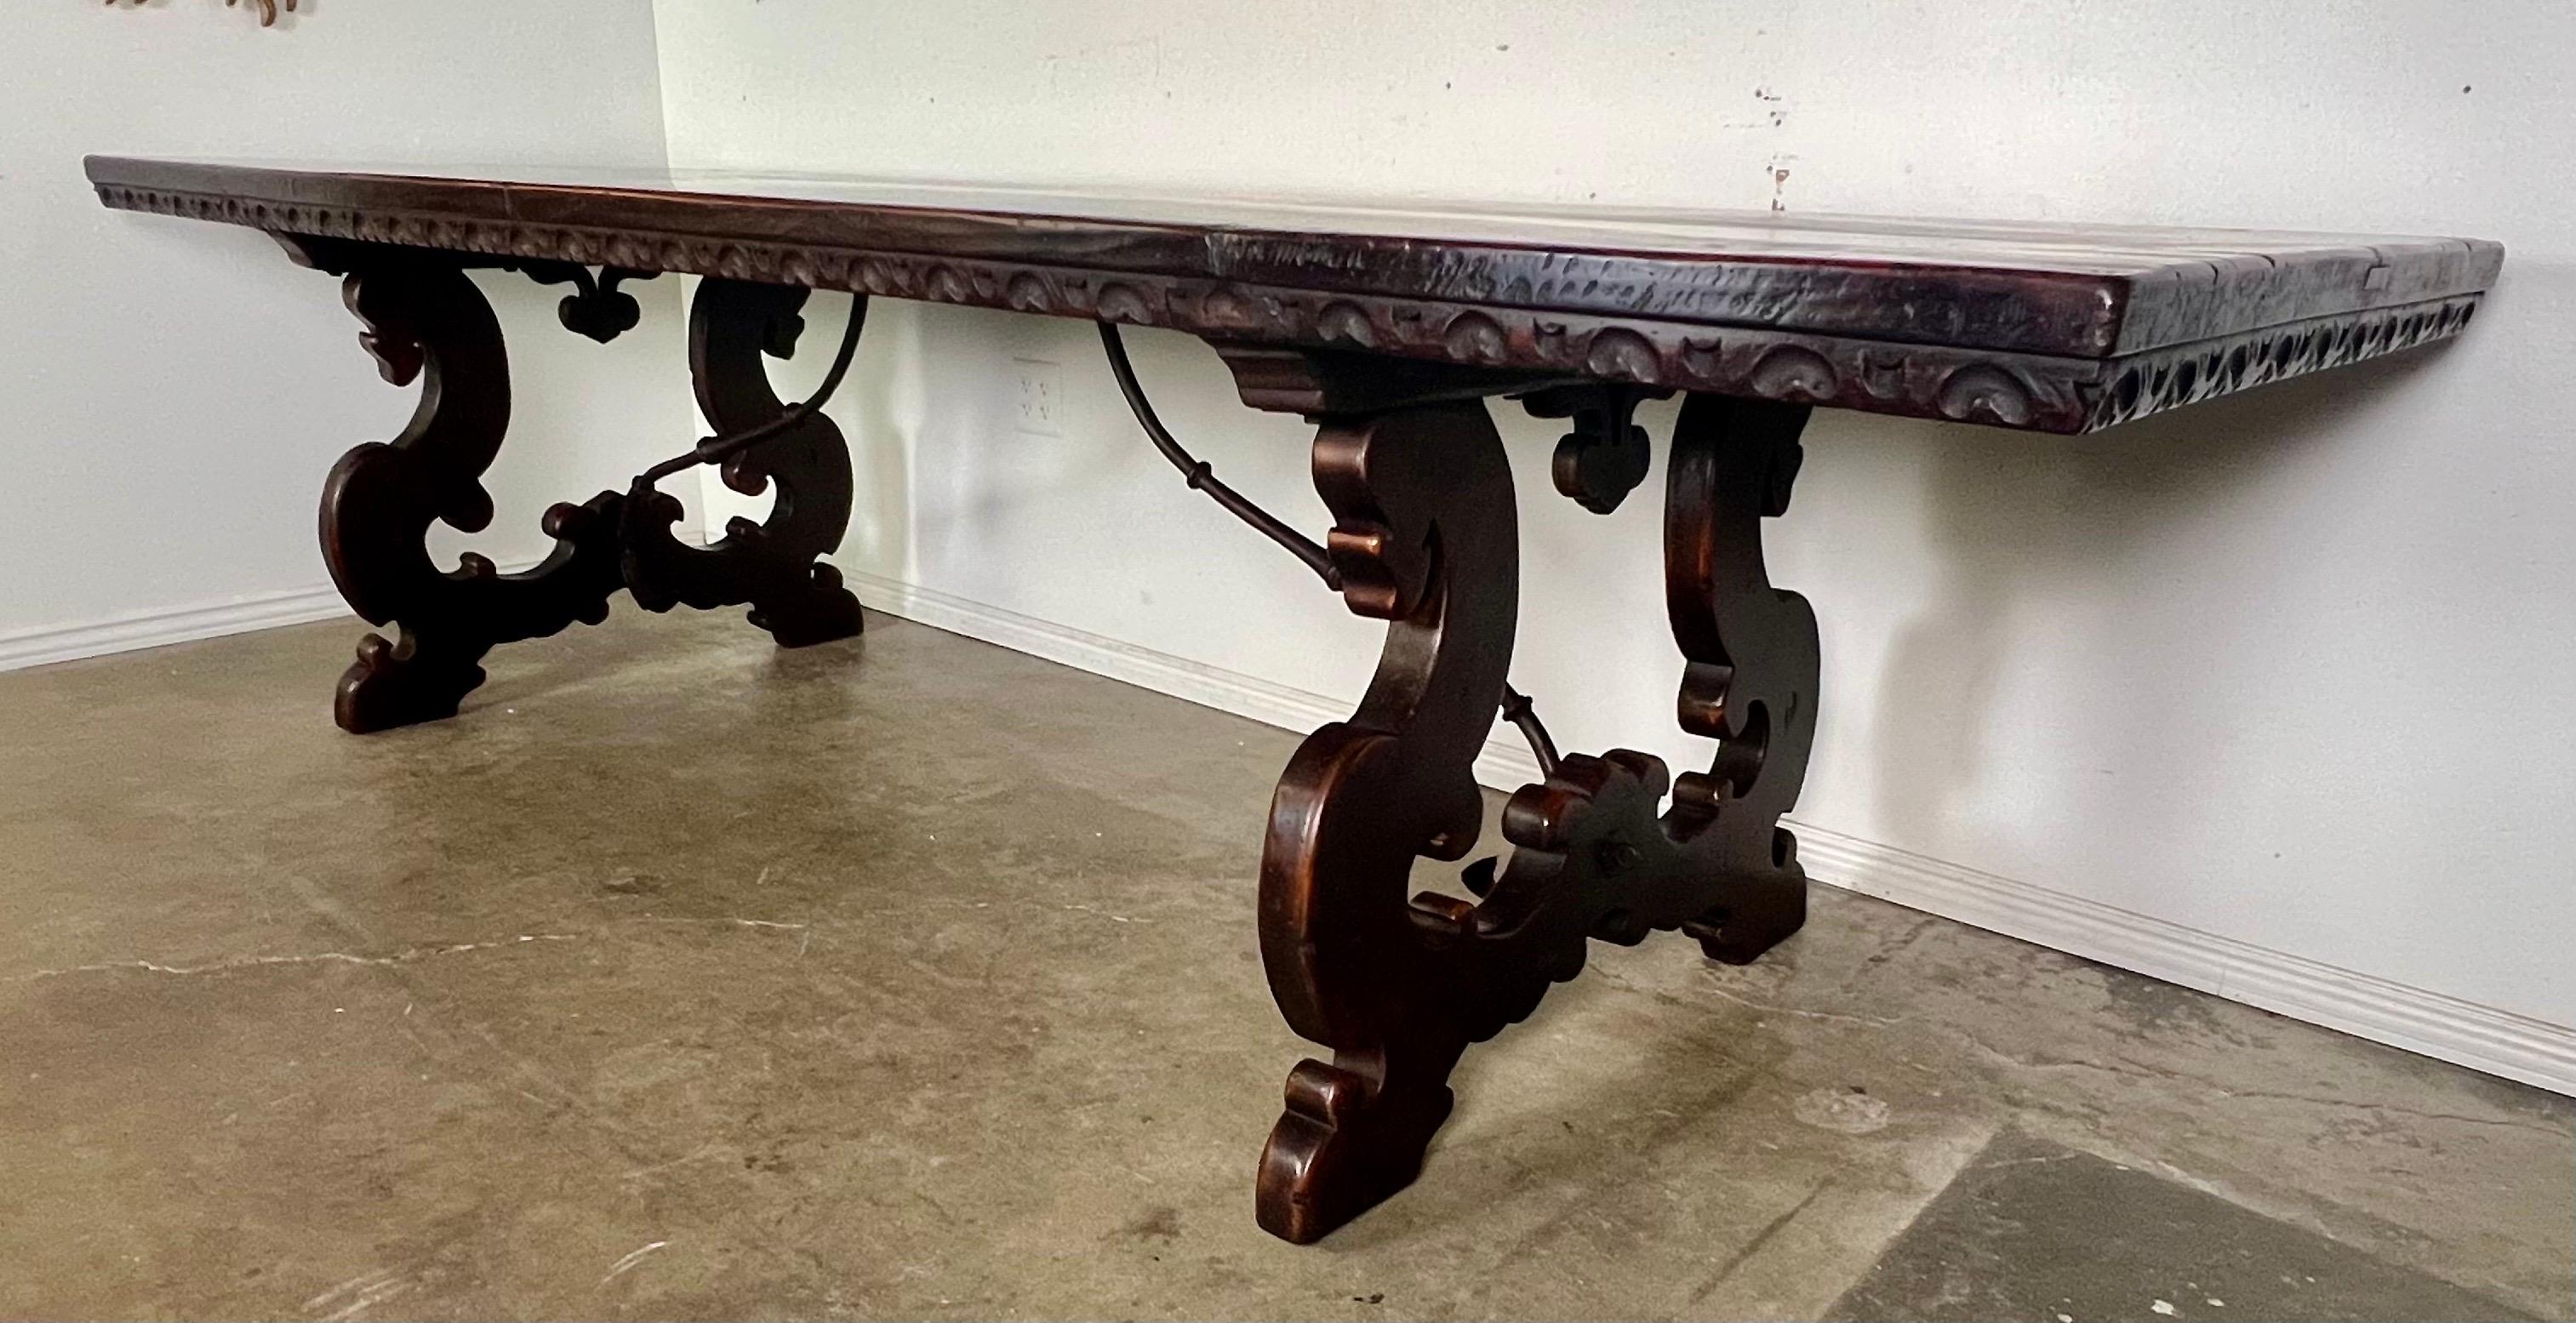 Table de salle à manger de style baroque italien du début du XIXe siècle, fabriquée en noyer et dotée de bases en forme de lyre.  Le châssis en fer ajoute à sa durabilité et à son attrait esthétique, tandis que les éléments de design baroque